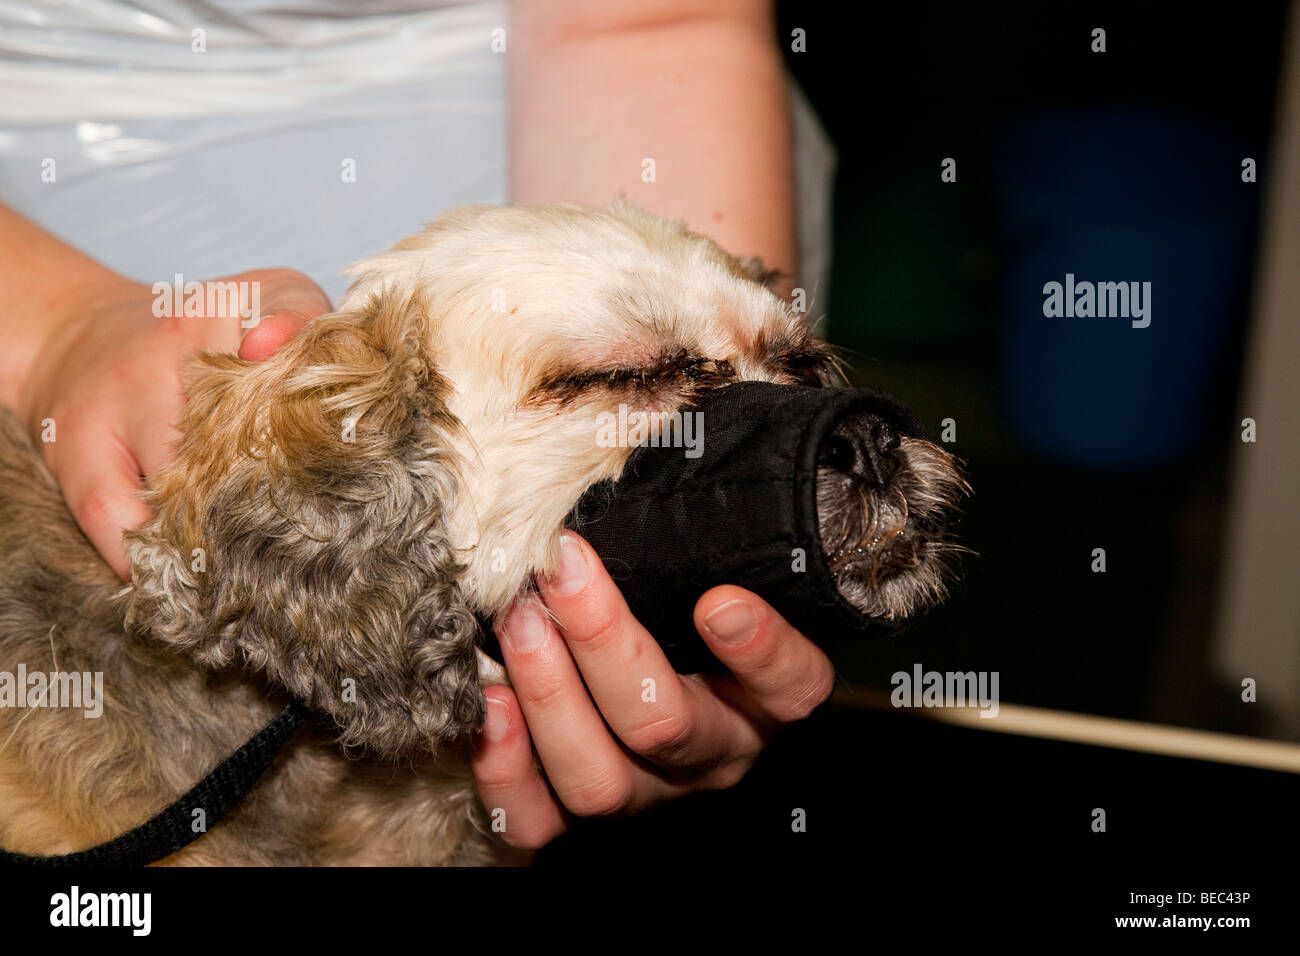 Dog with Muzzle Stock Photo